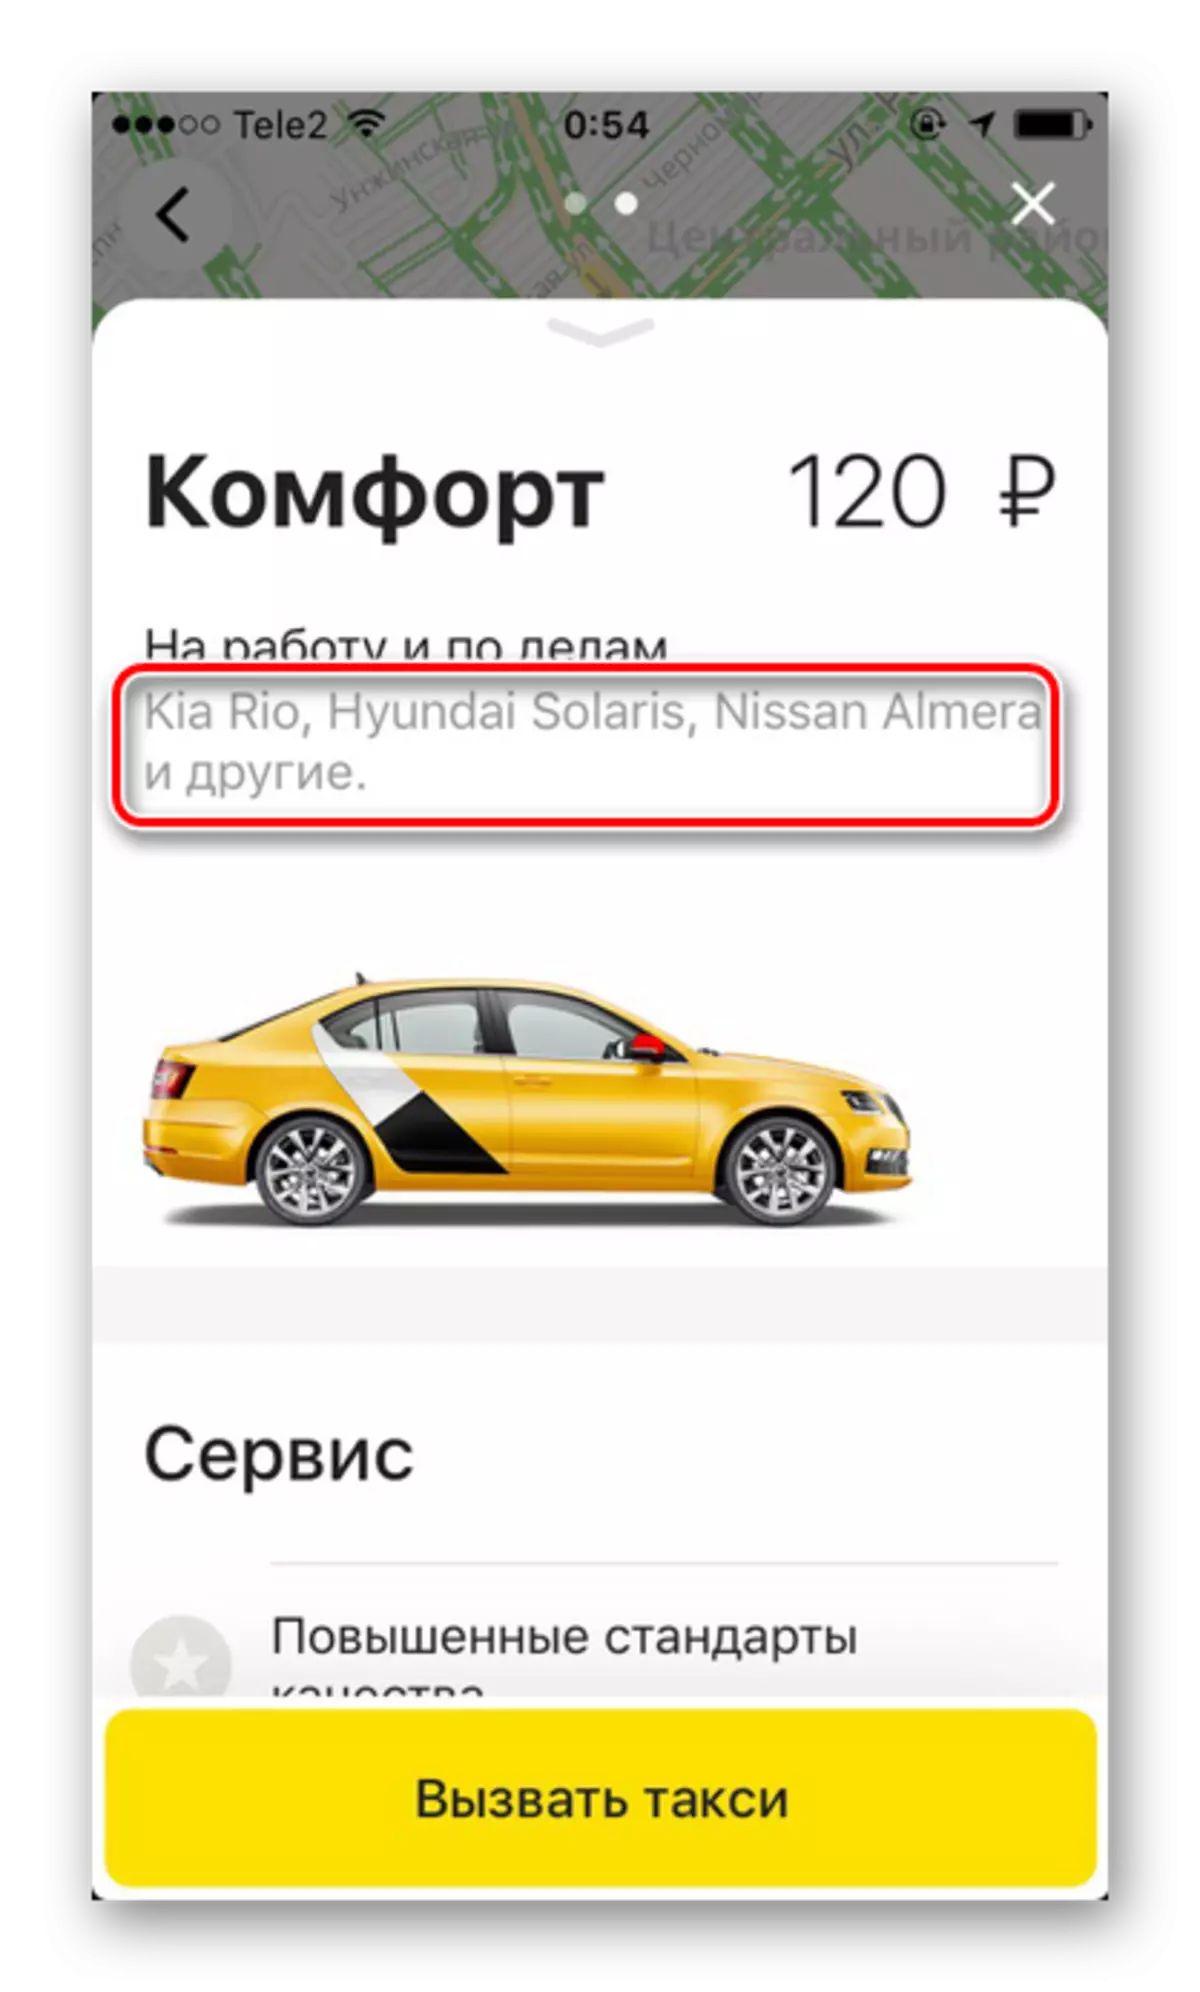 Brands Machine Eduzane nenduduzo Yentela ku-Yandex.Taxi Isicelo ku-iPhone